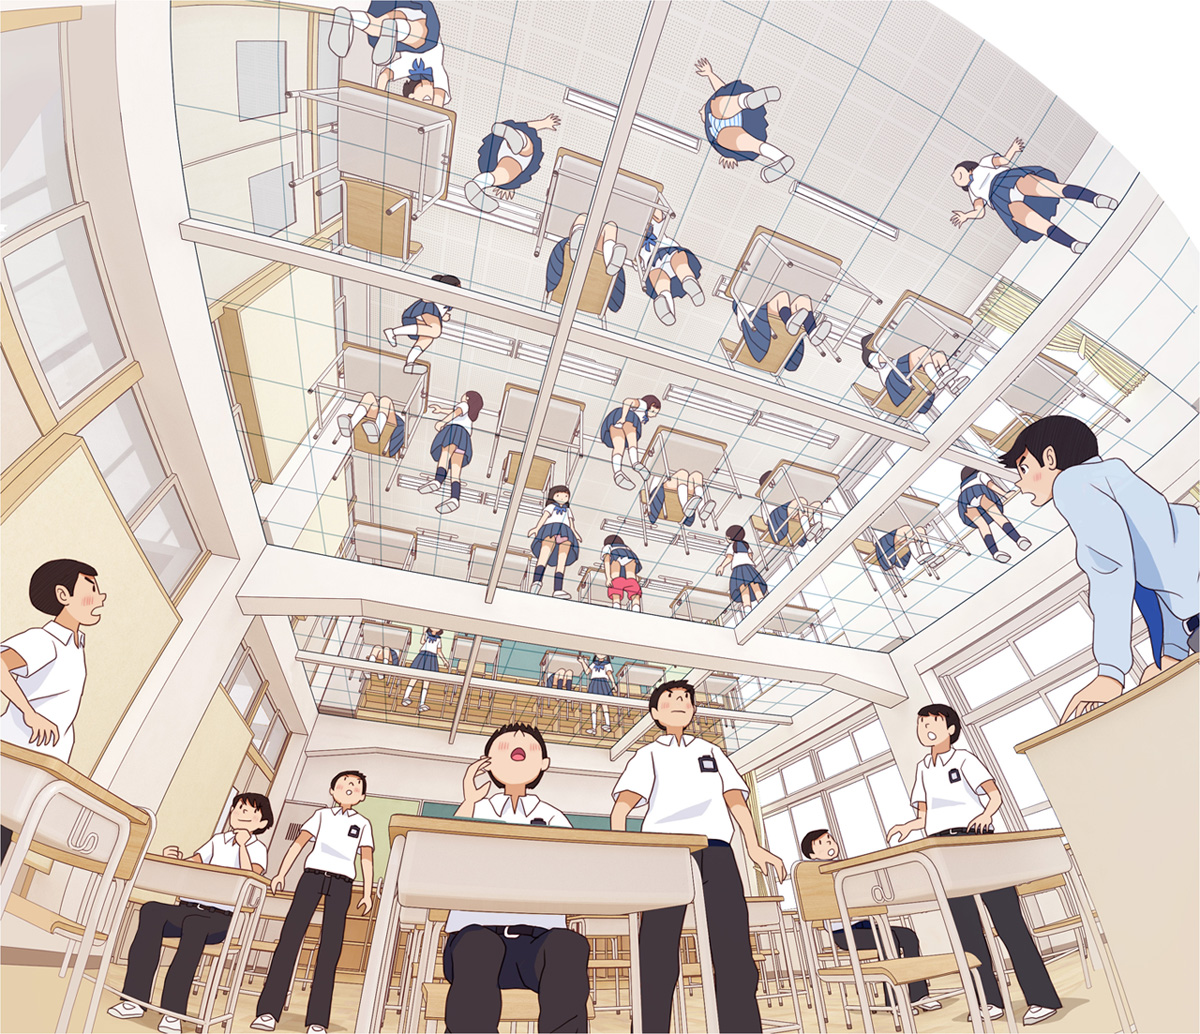 【妄想系列】如果教室的地板是玻璃的话插画图片壁纸